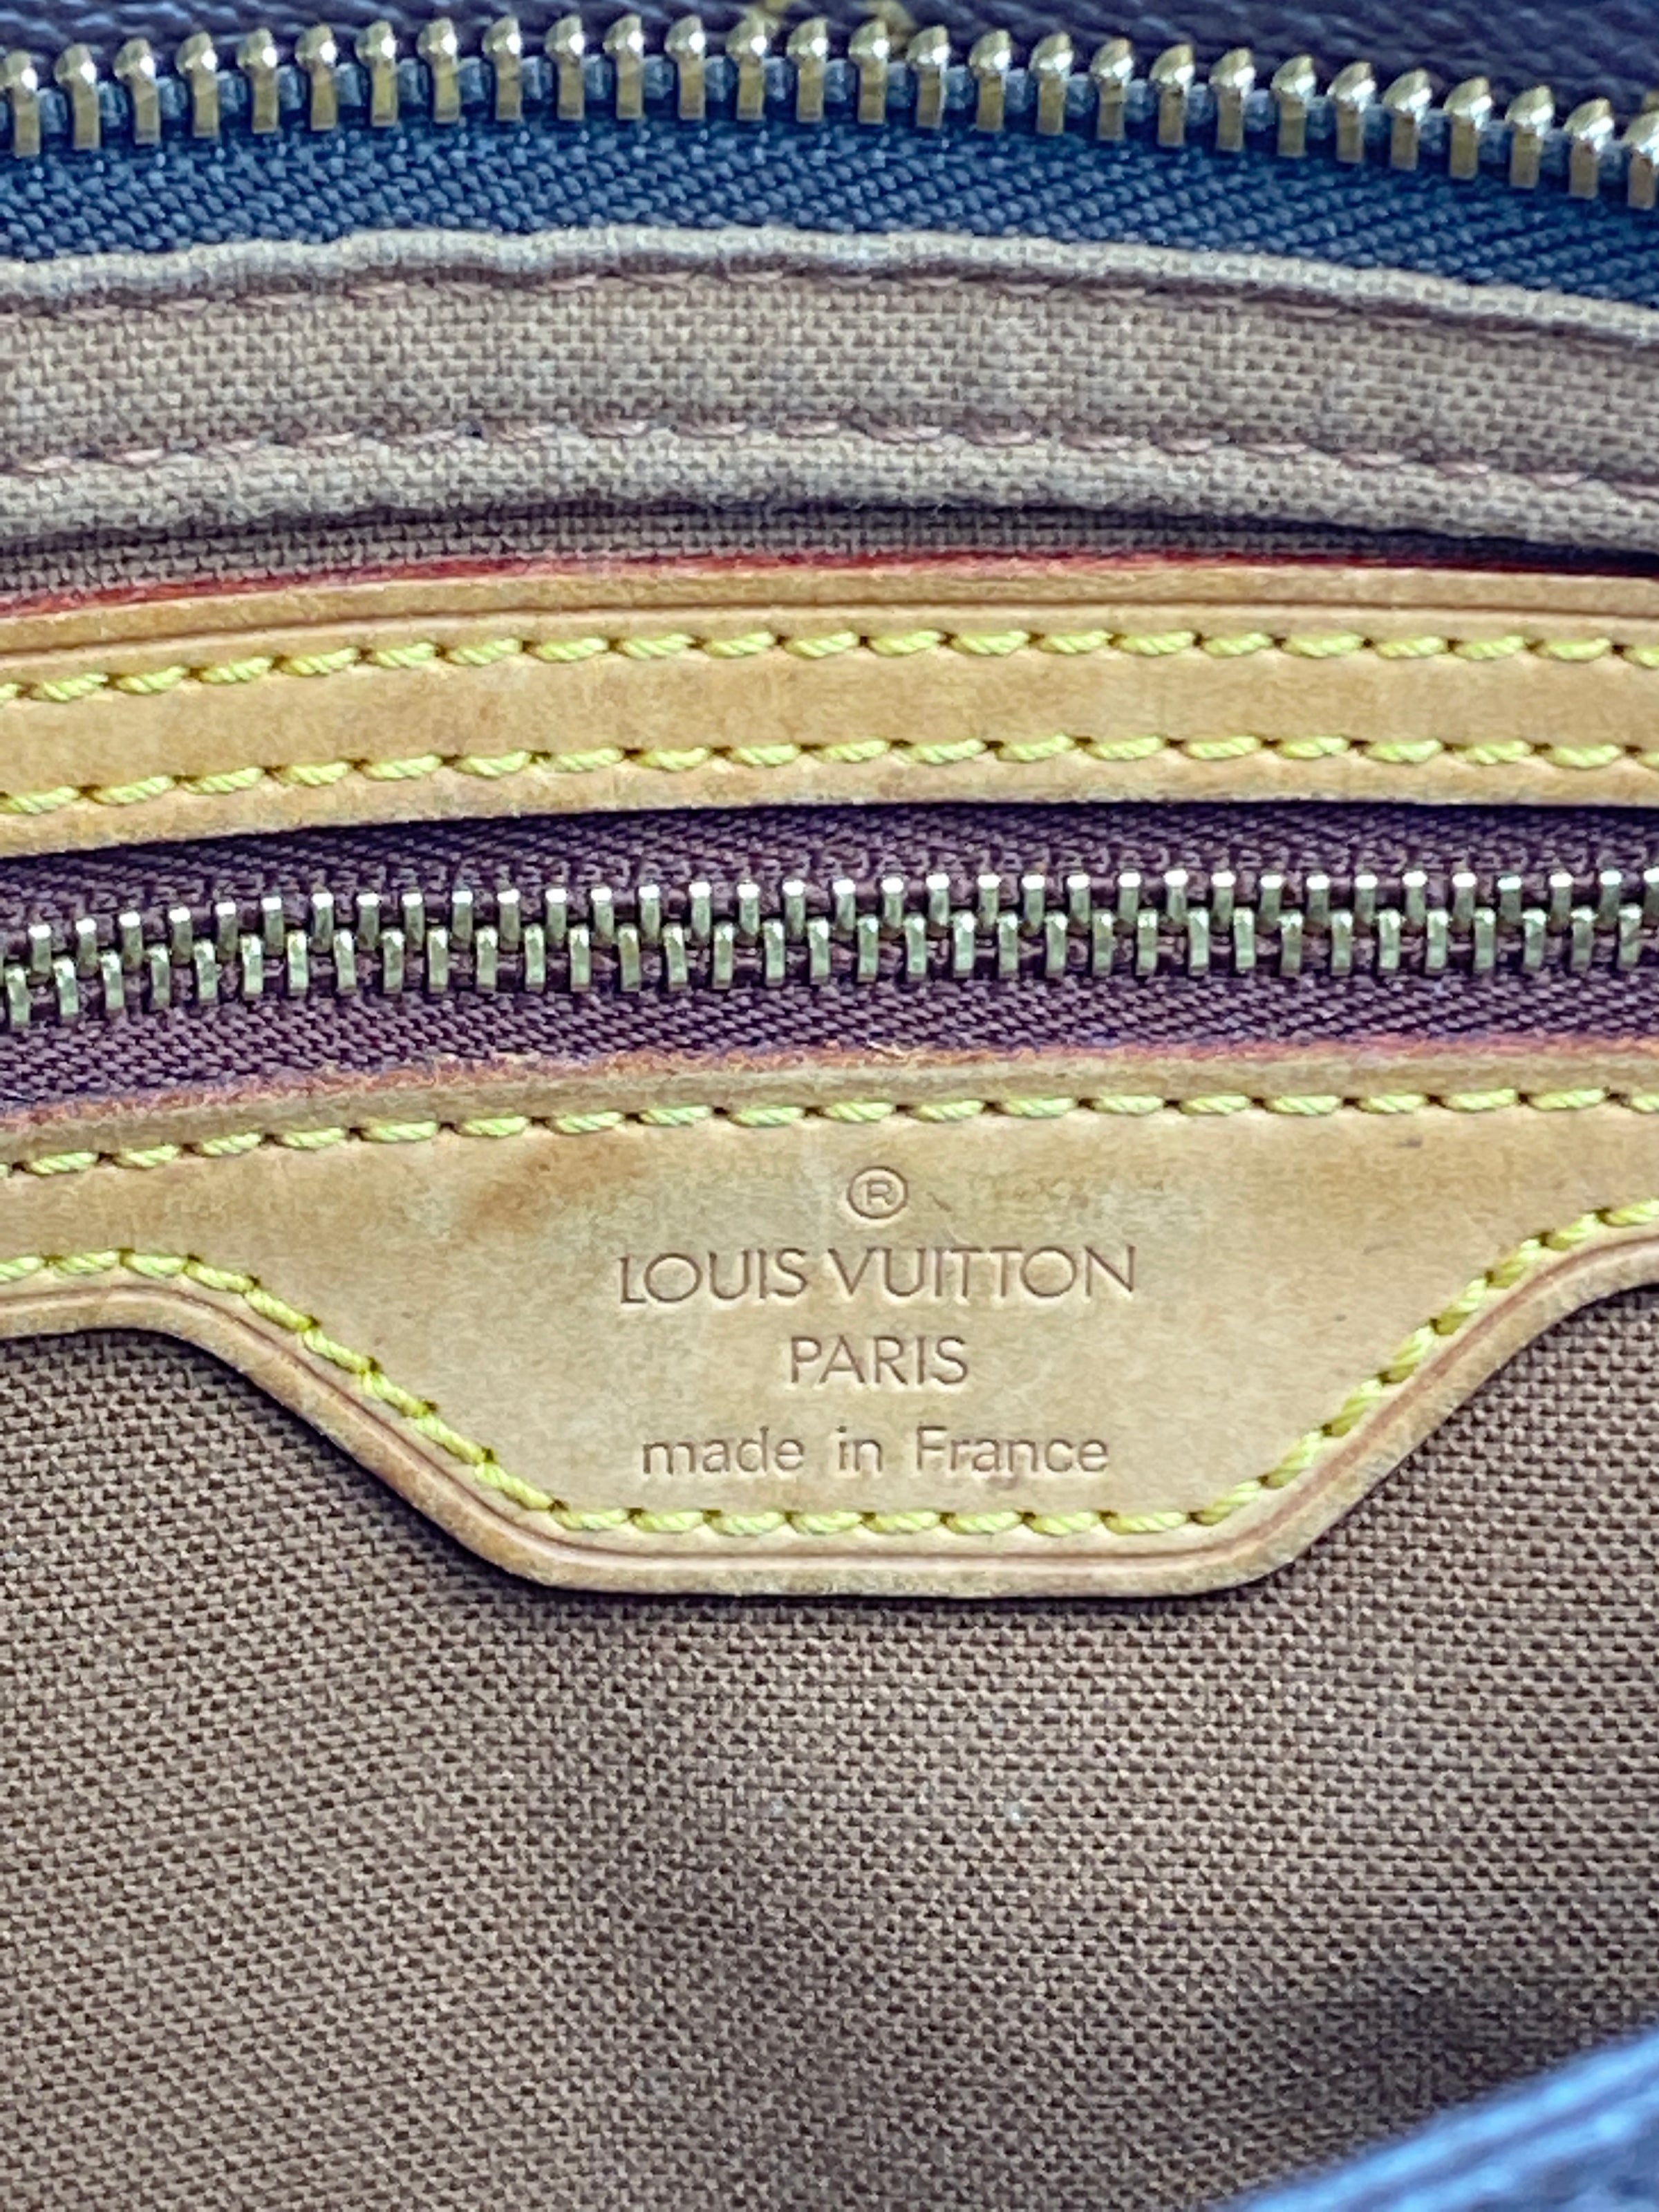 Louis Vuitton Monogram Trotteur Crossbody Bag 913lv19